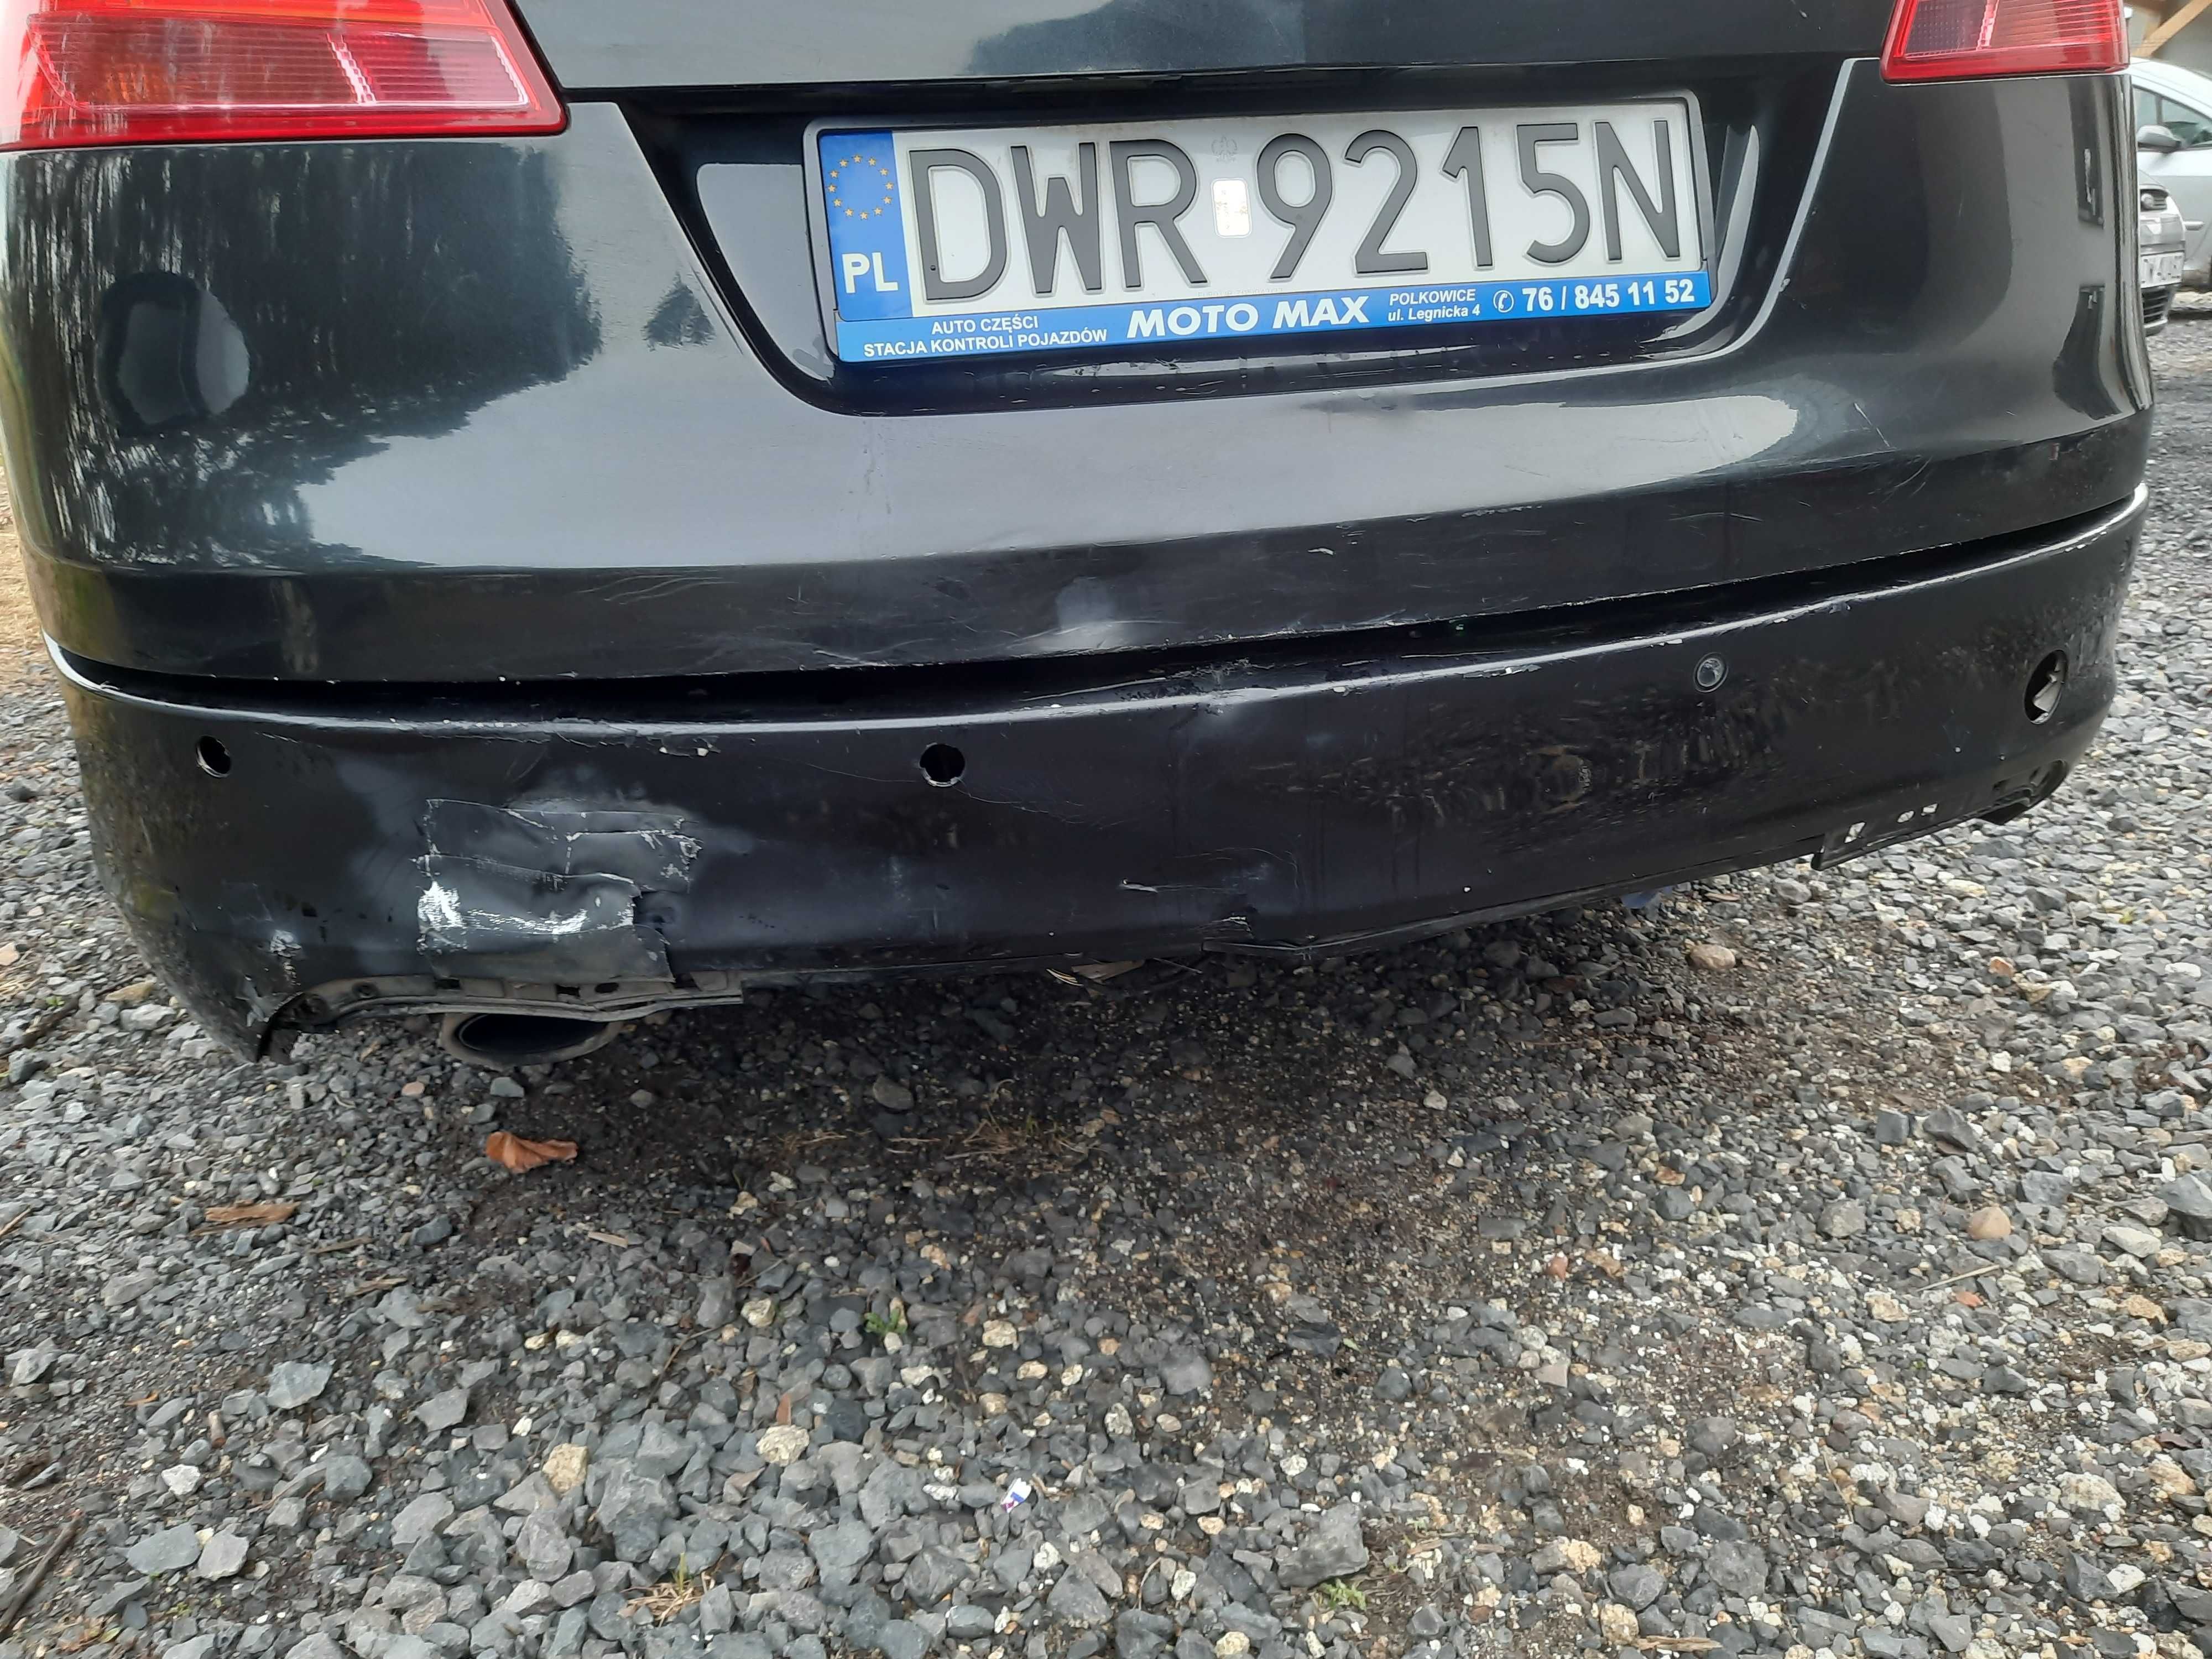 Opel insignia 2009 r. 2.0 diesel 160 km uszkodzony